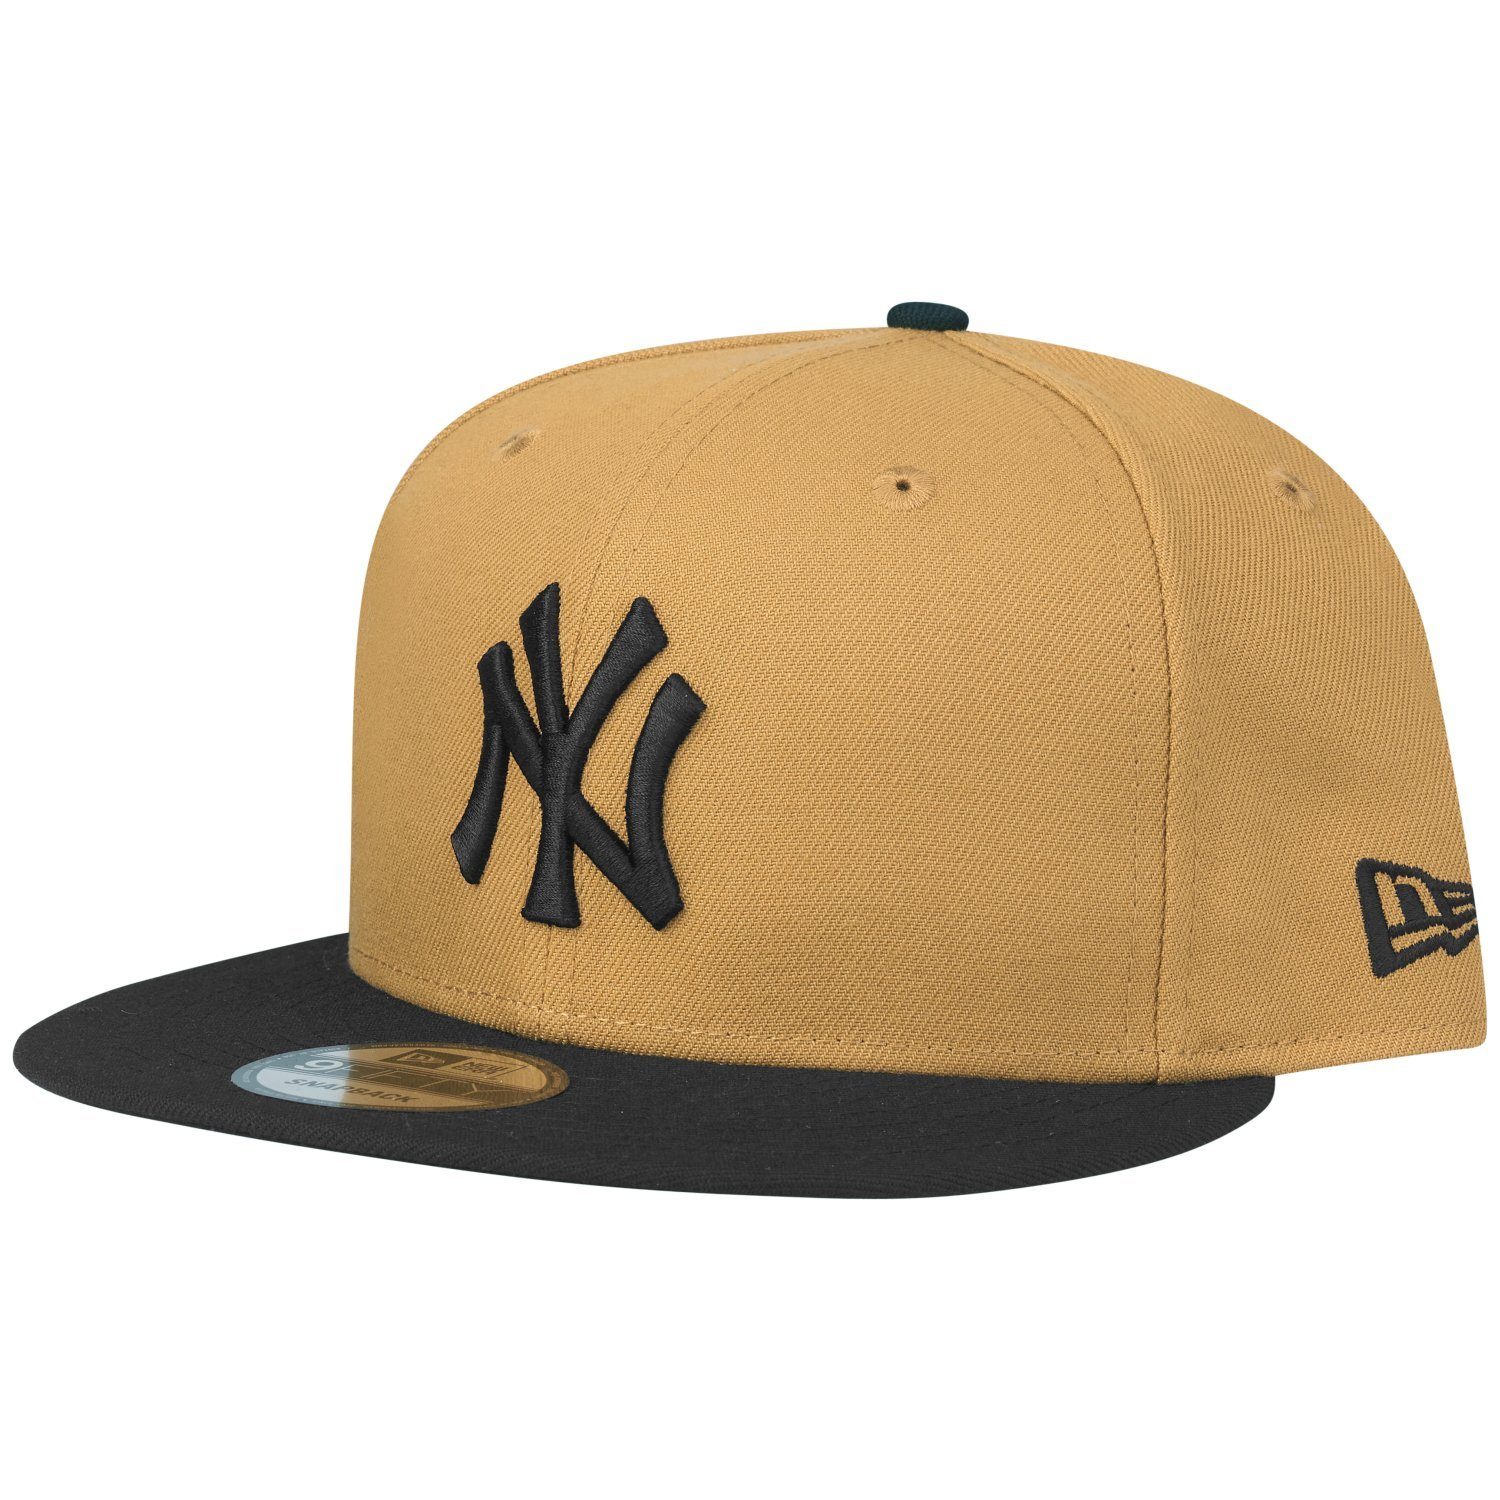 Herren Caps New Era Snapback Cap 9Fifty New York Yankees panama